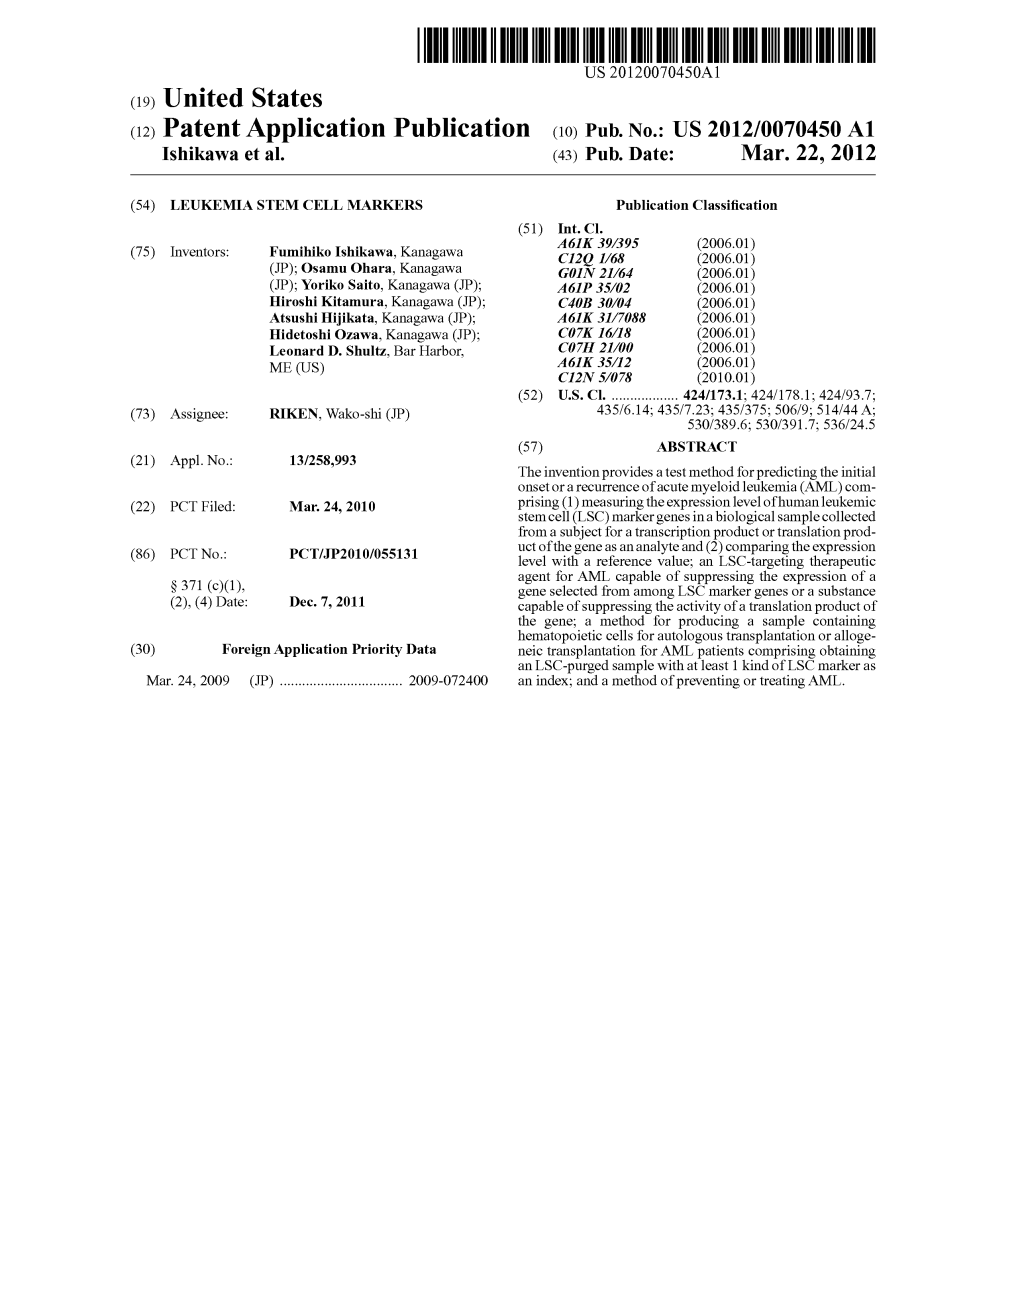 (12) Patent Application Publication (10) Pub. No.: US 2012/0070450 A1 Ishikawa Et Al